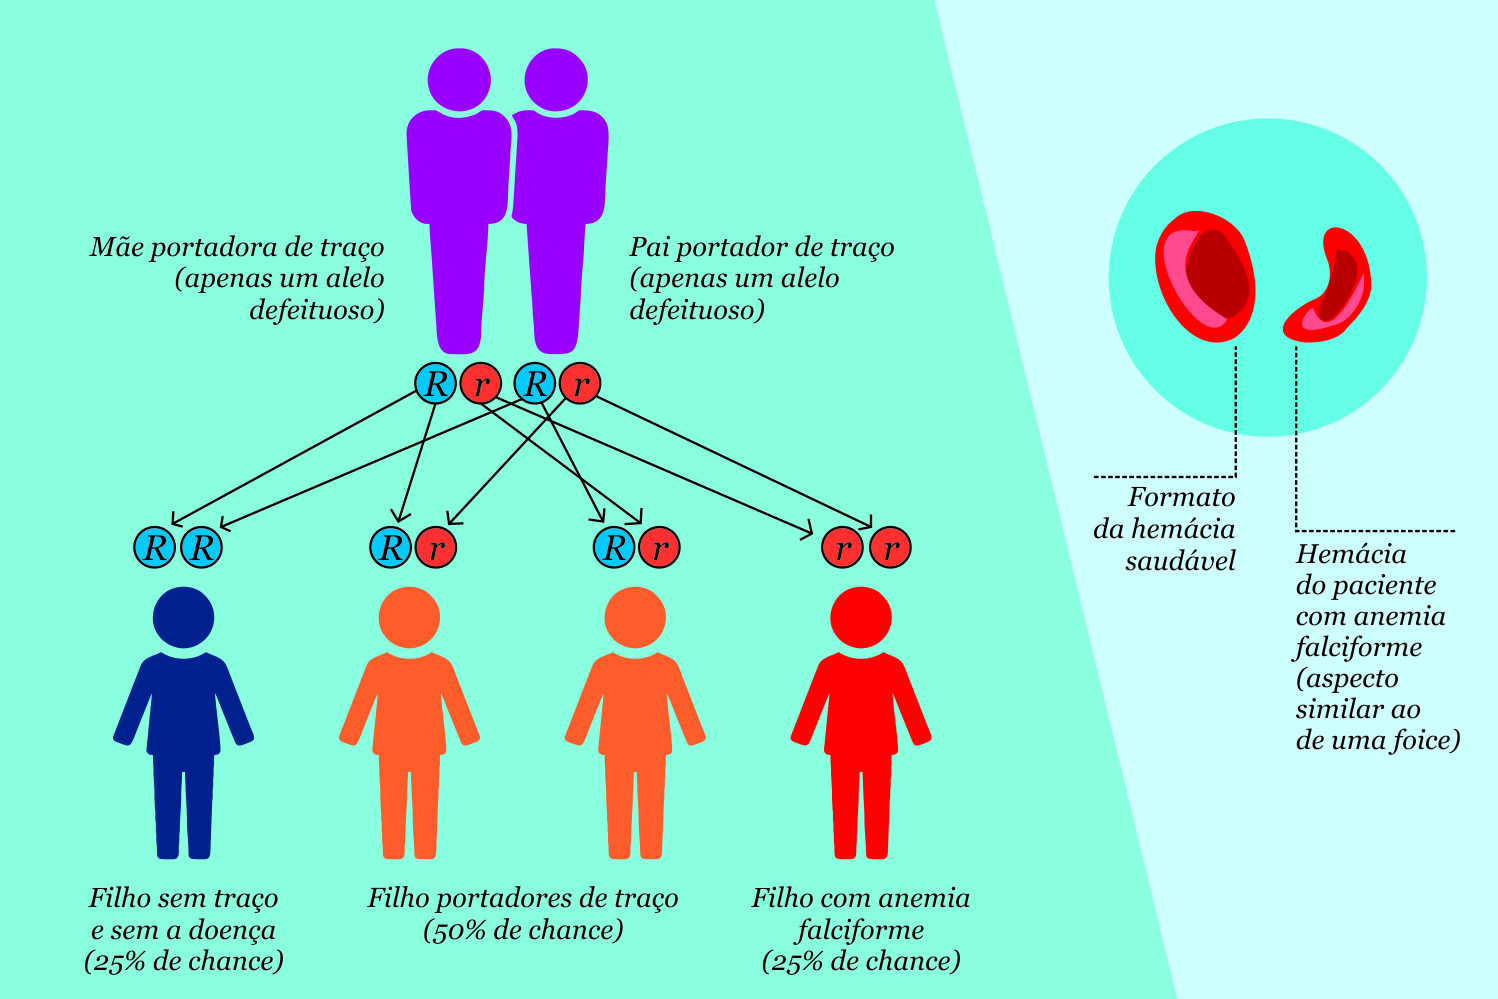 Hereditariedade do traço falciforme e como a doença altera a forma das hemácias (Infográfico: Marcilio Costa - Ascom/UFS)